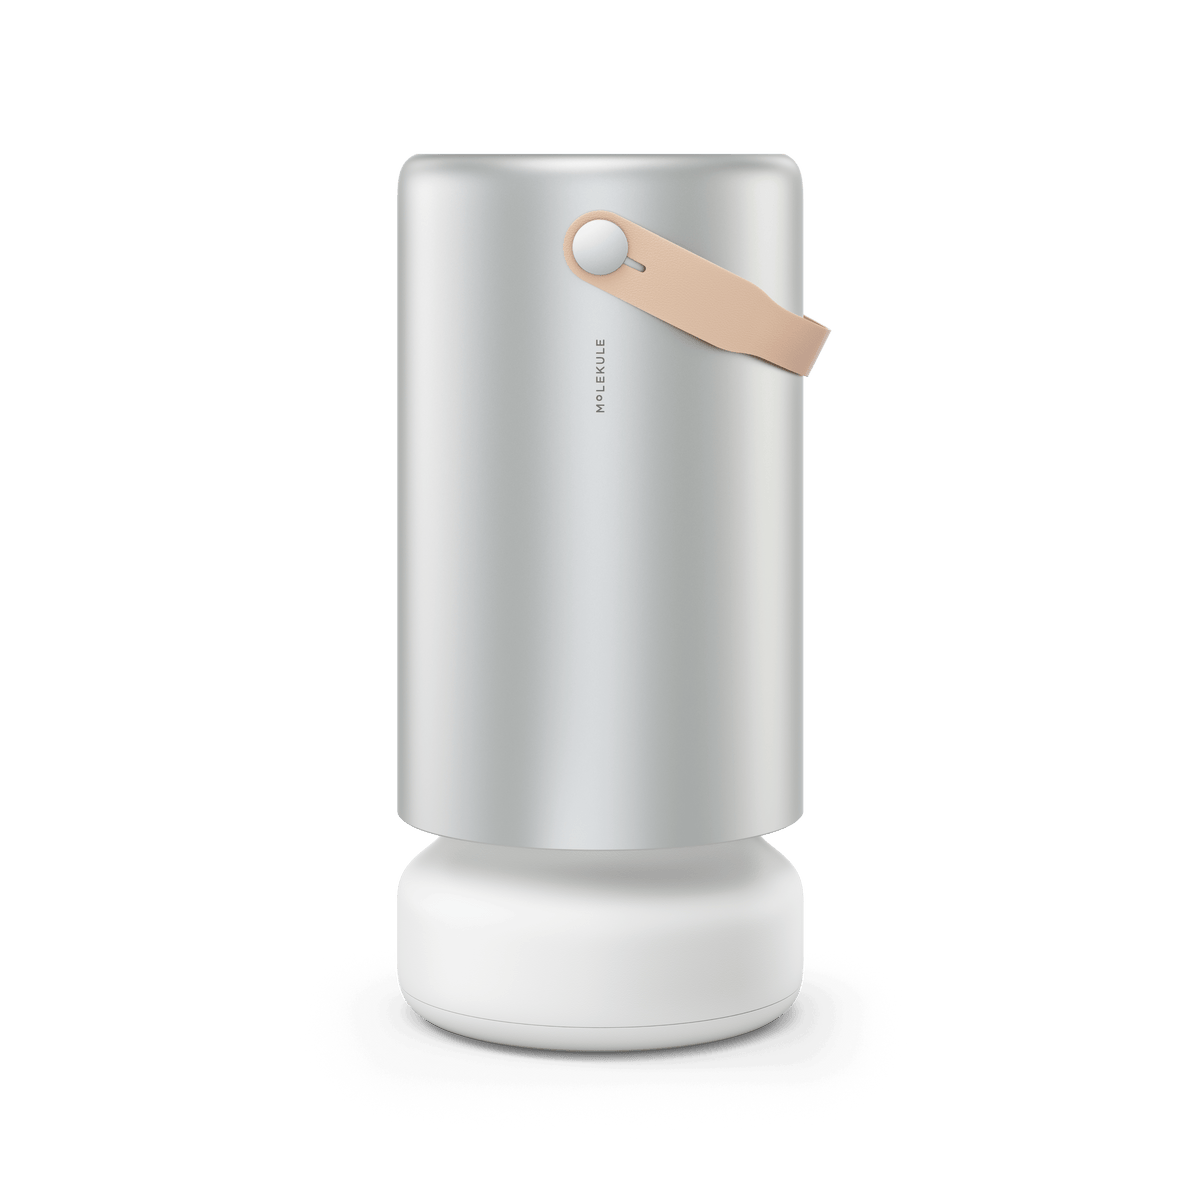 Air Pro air purifier